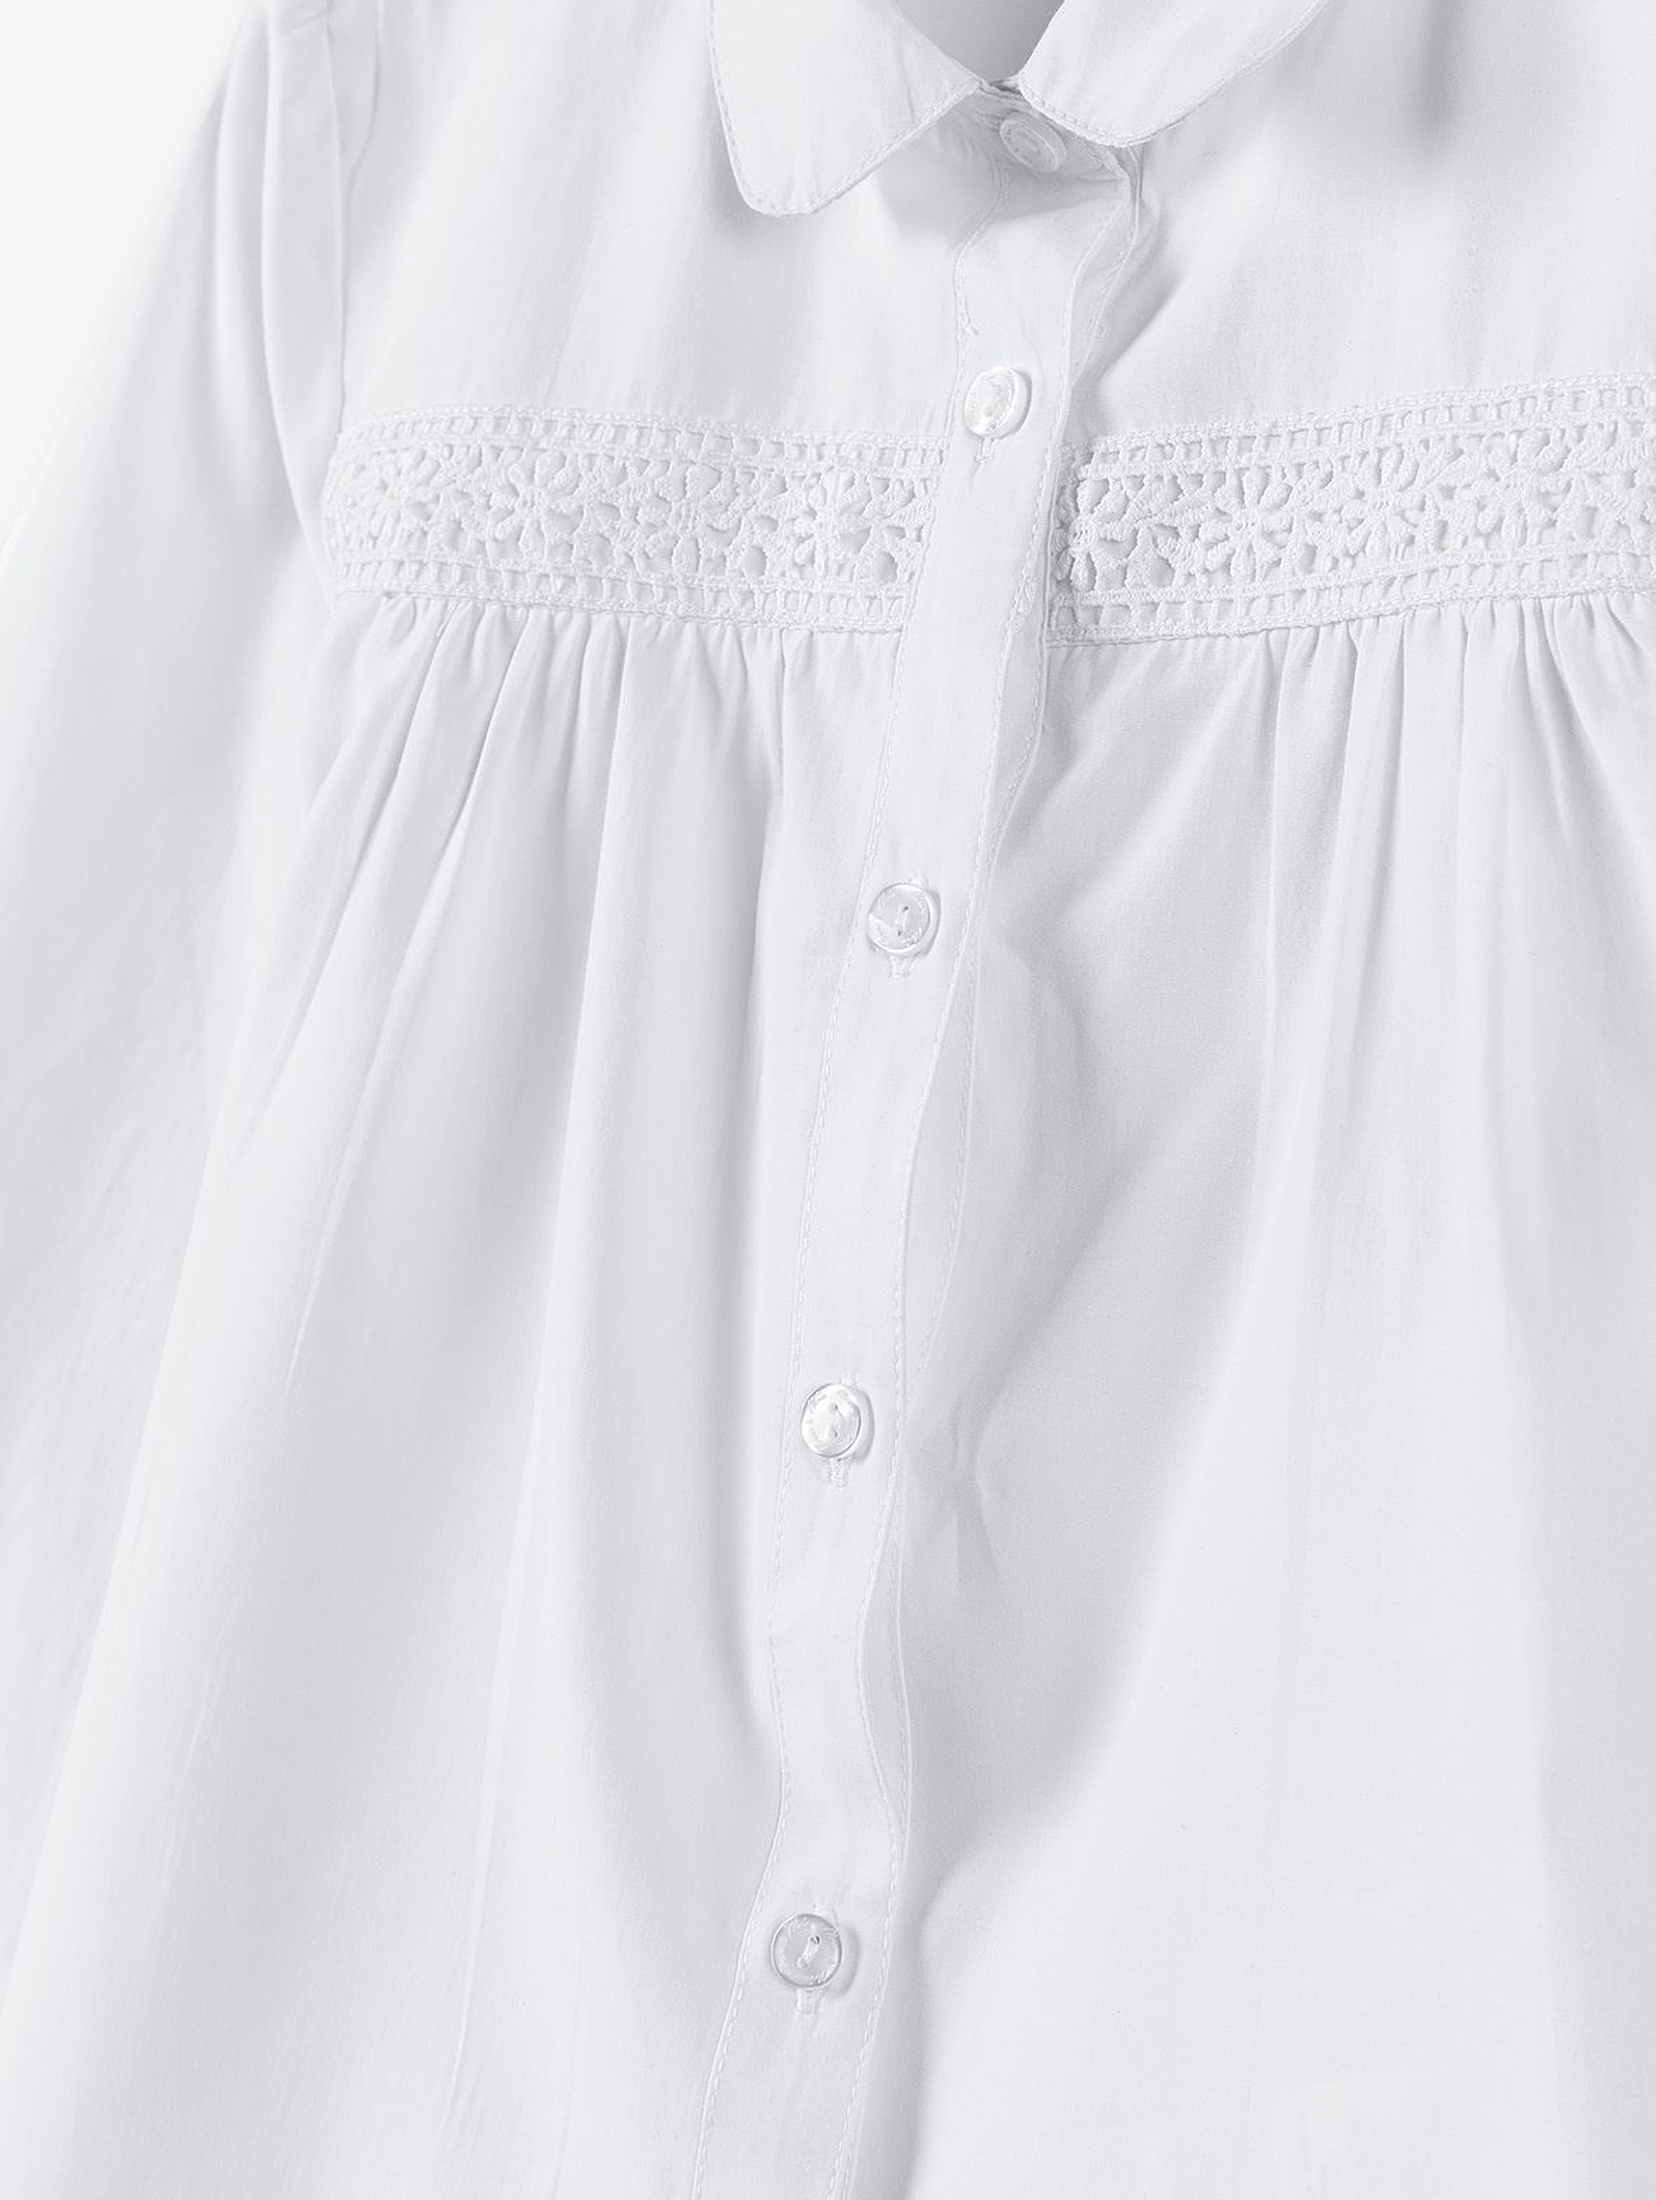 Biała koszula dziewczęca zapinana na guziki -długi rękaw